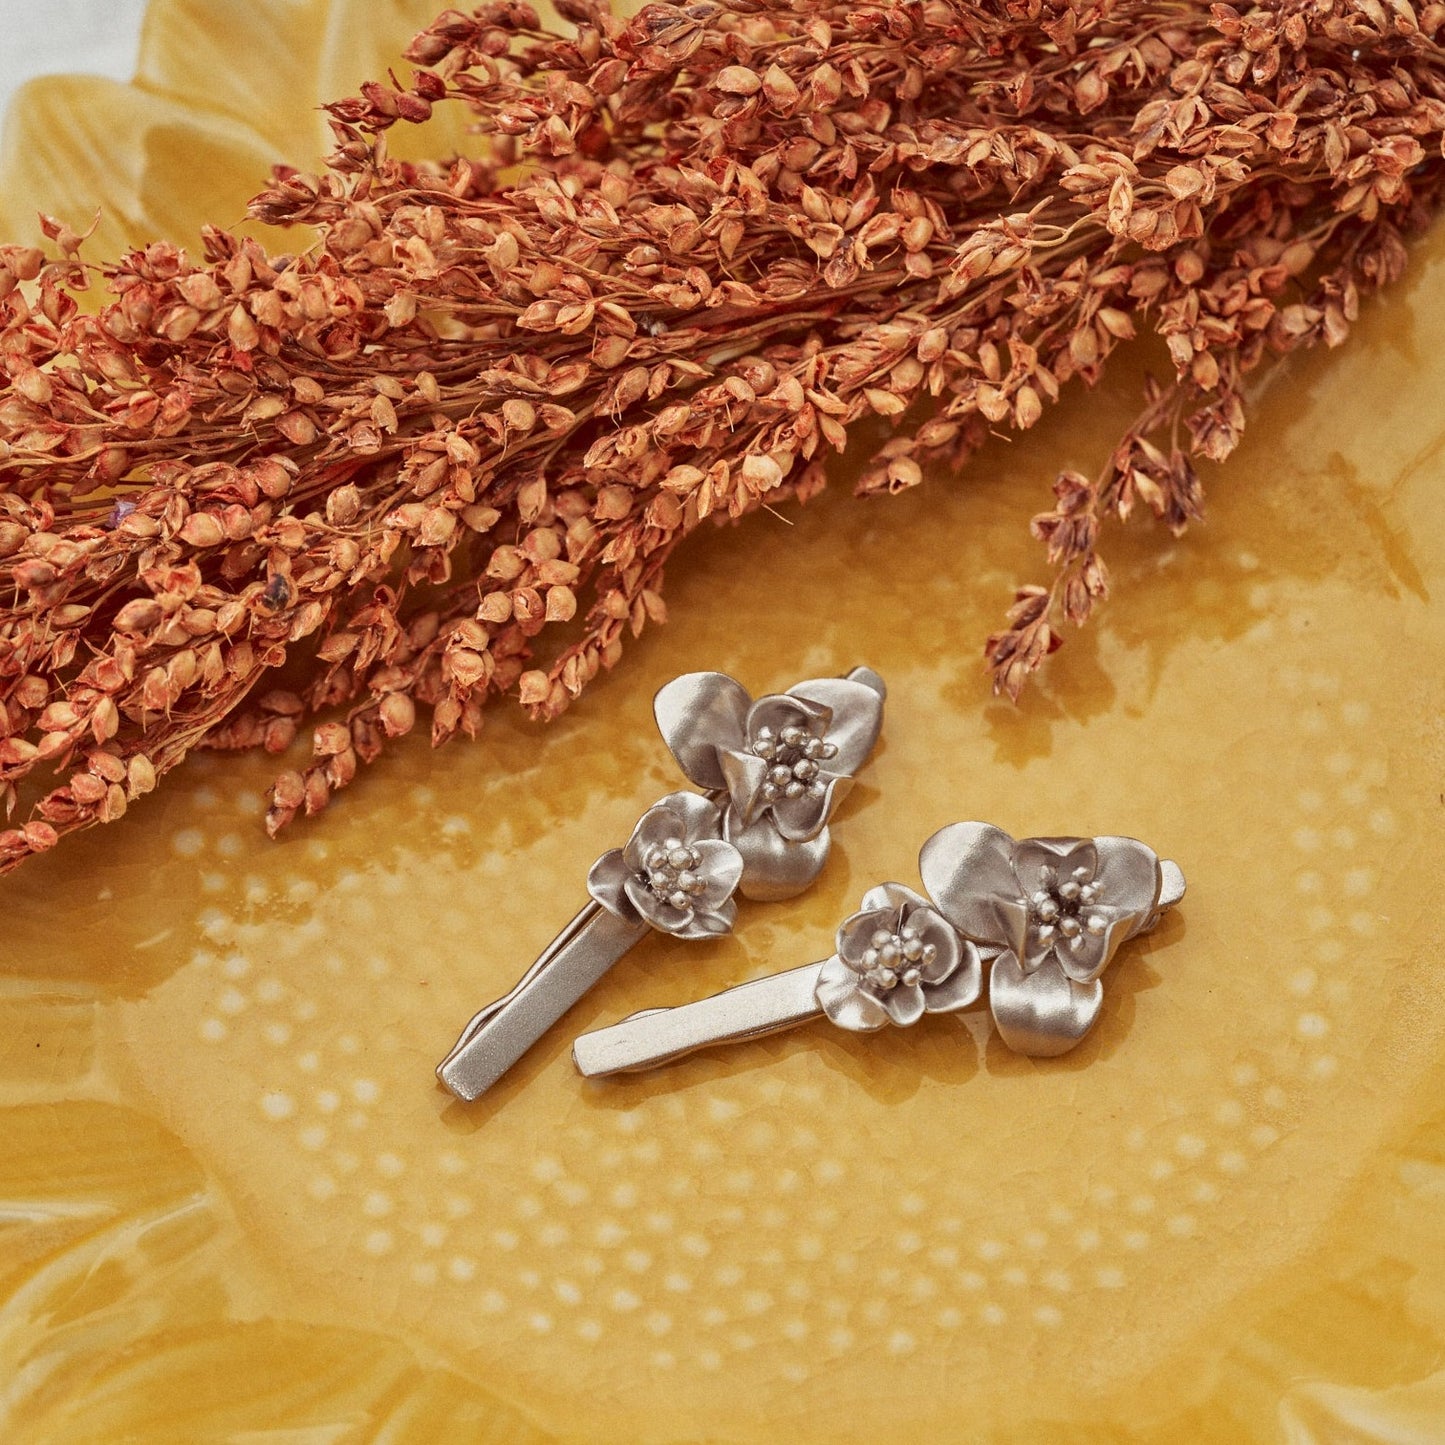 Detalle de los Pasadores Flora, accesorios para el pelo realizados en plata de ley. En la foto se muestran en un acabado mate.